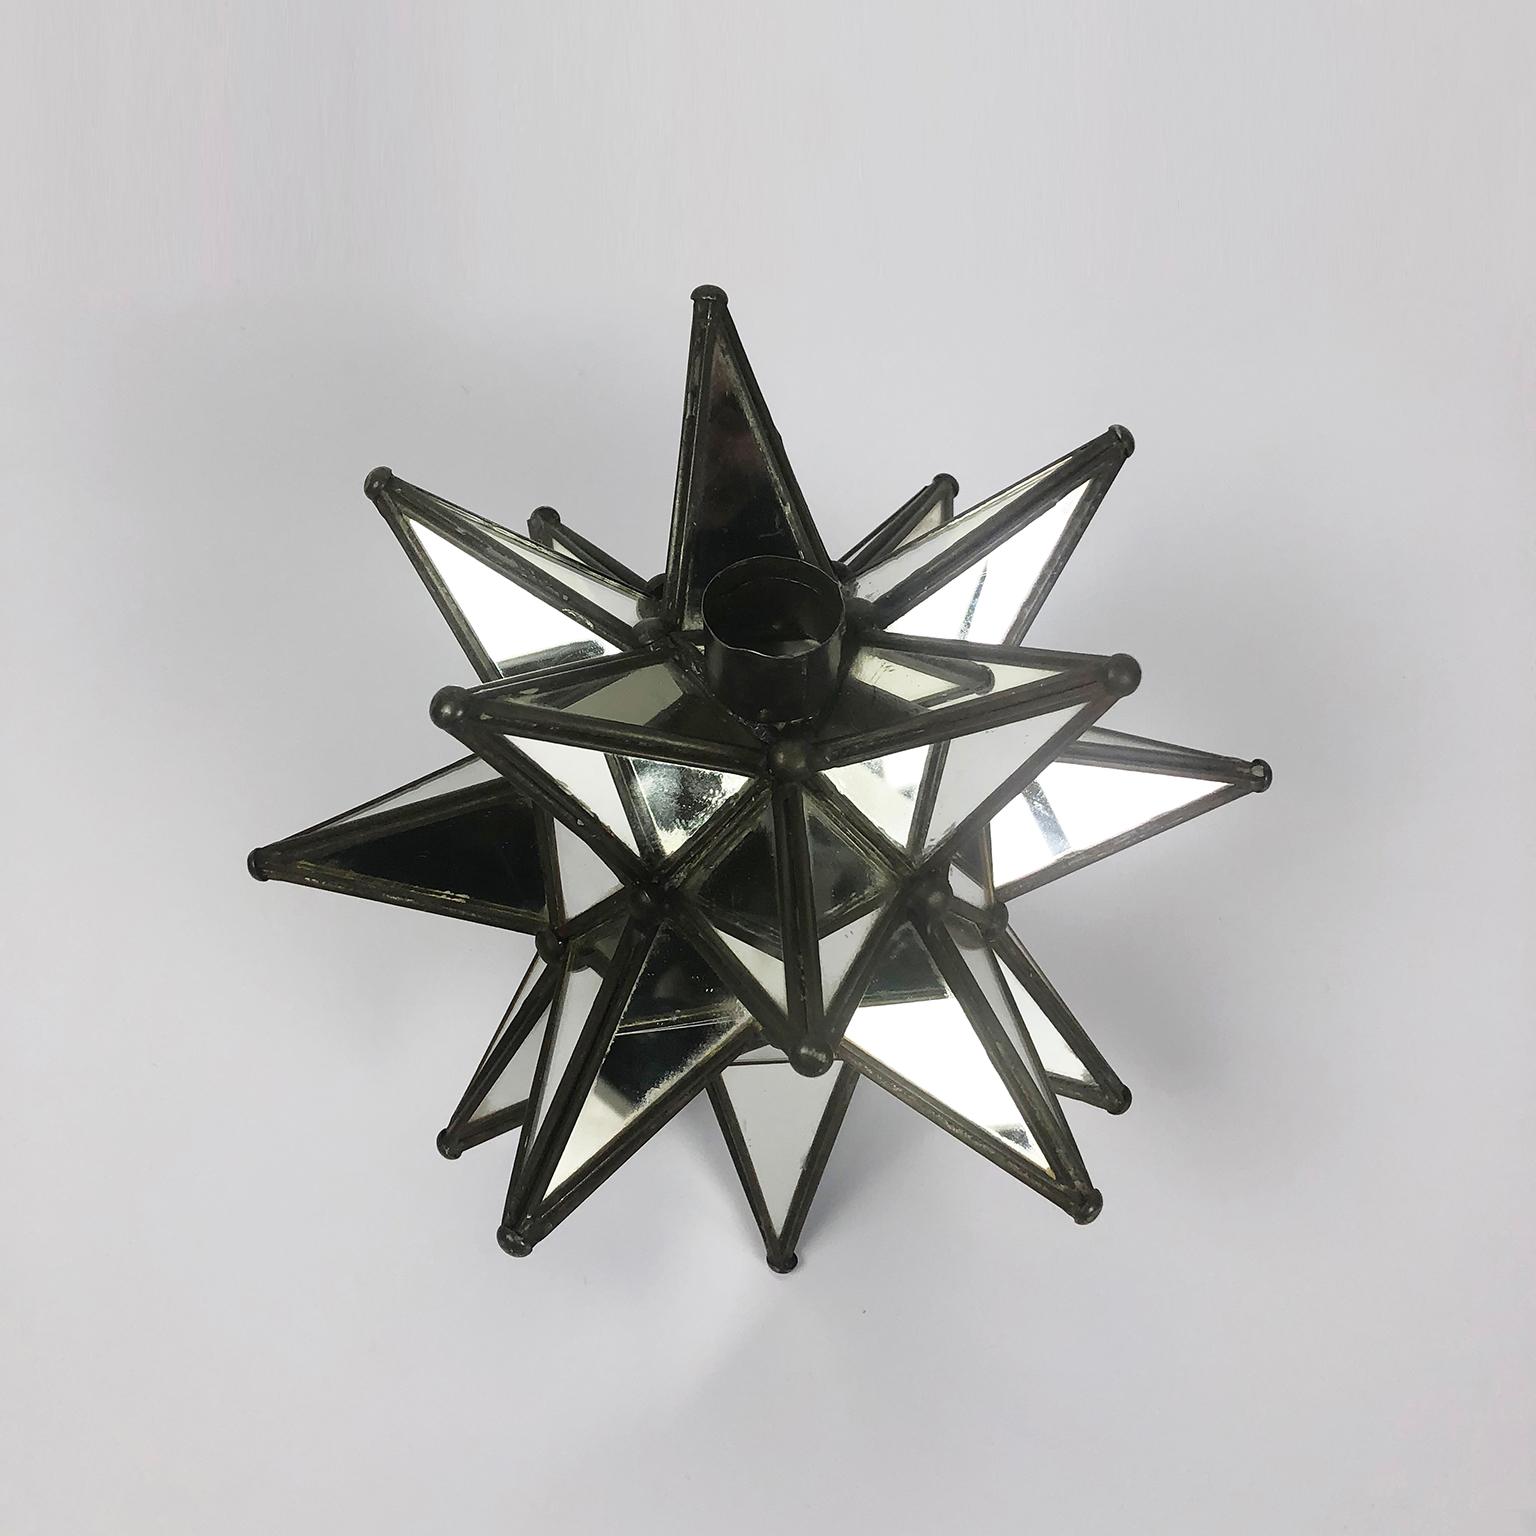 Nous vous proposons cette fantastique paire de chandeliers en forme d'étoile avec miroirs encastrés, fabriqués à la main et datant du milieu du siècle dernier, vers 1960.